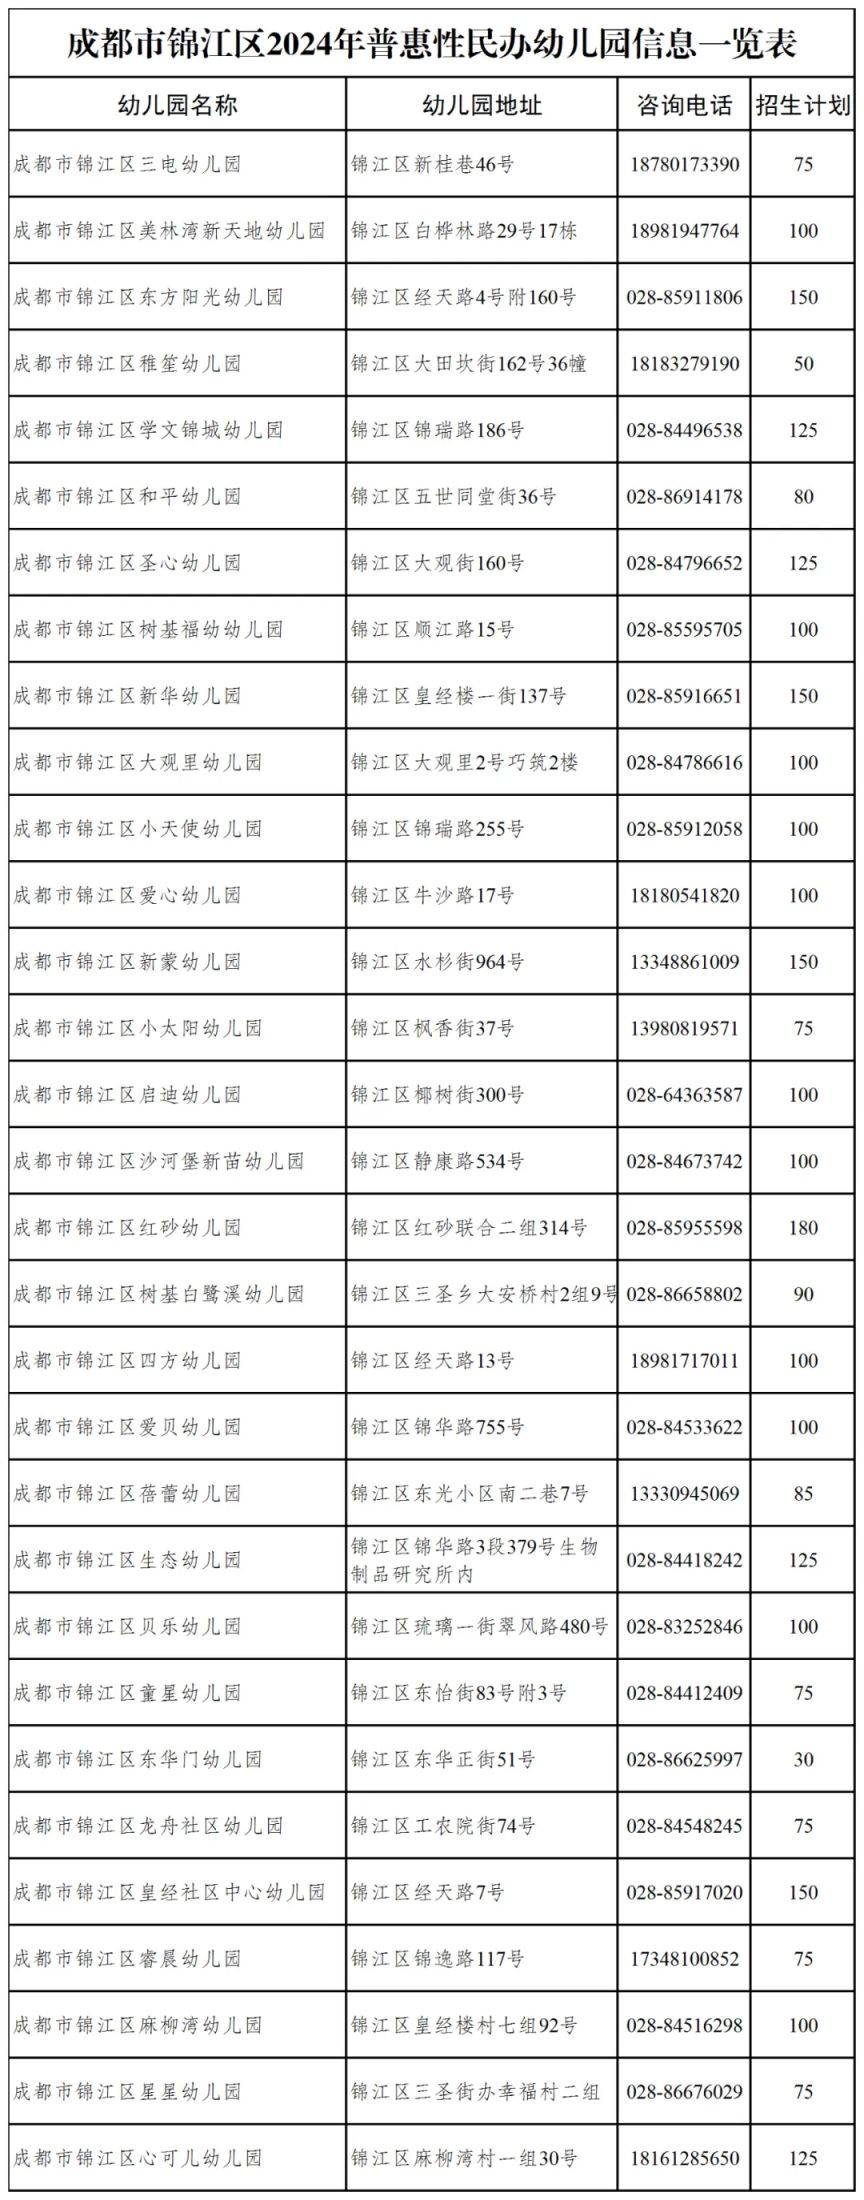 关于锦江区普惠性民办幼儿园名单,详见下文:温馨提示:微信搜索公众号